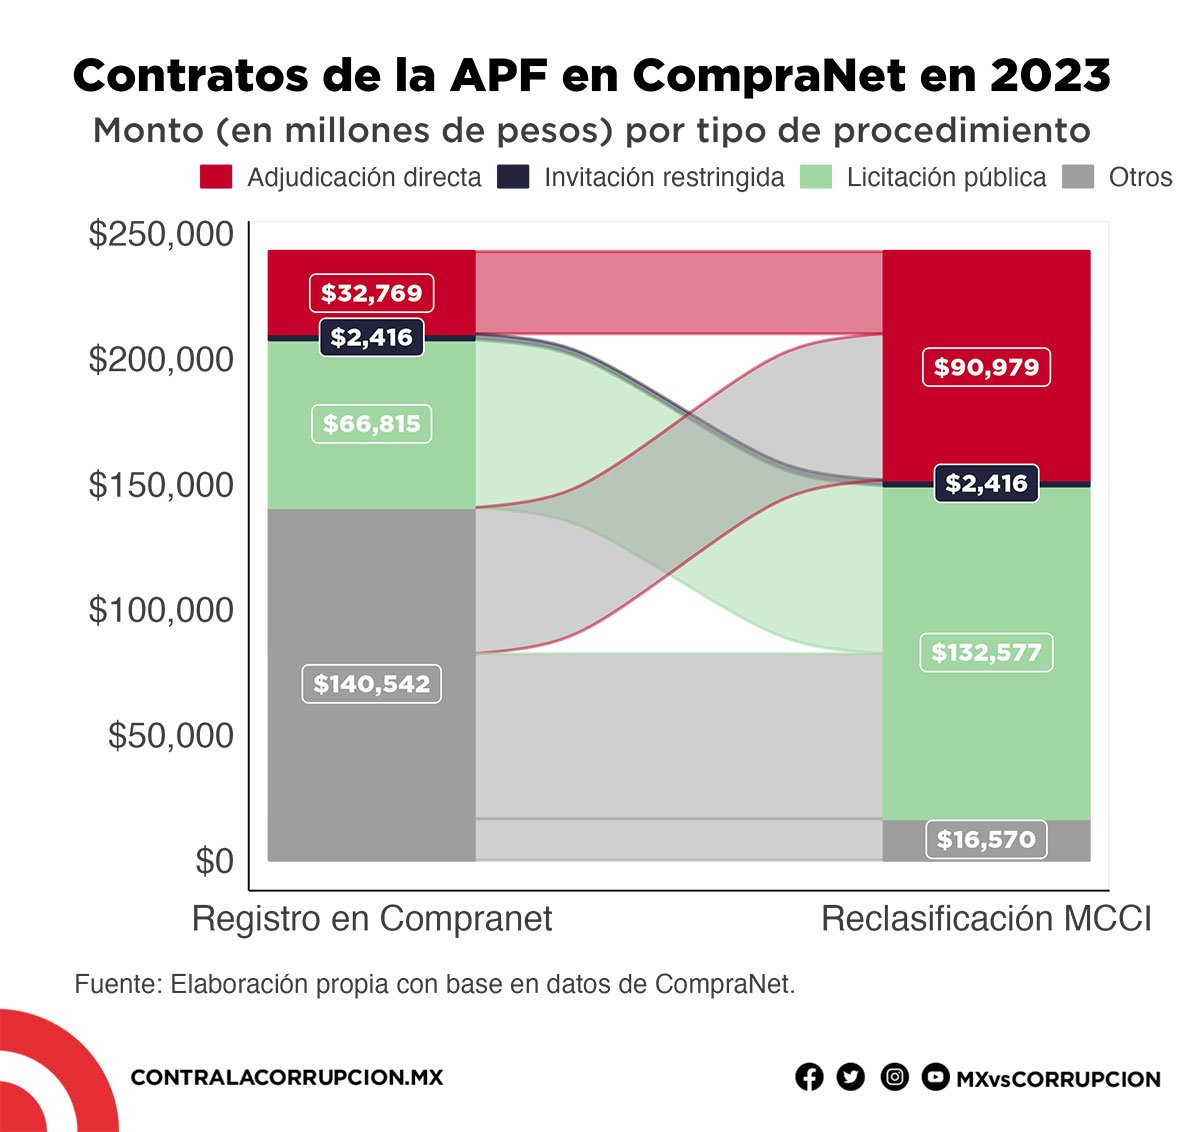 Contratos de la APF en CompraNet en 2023